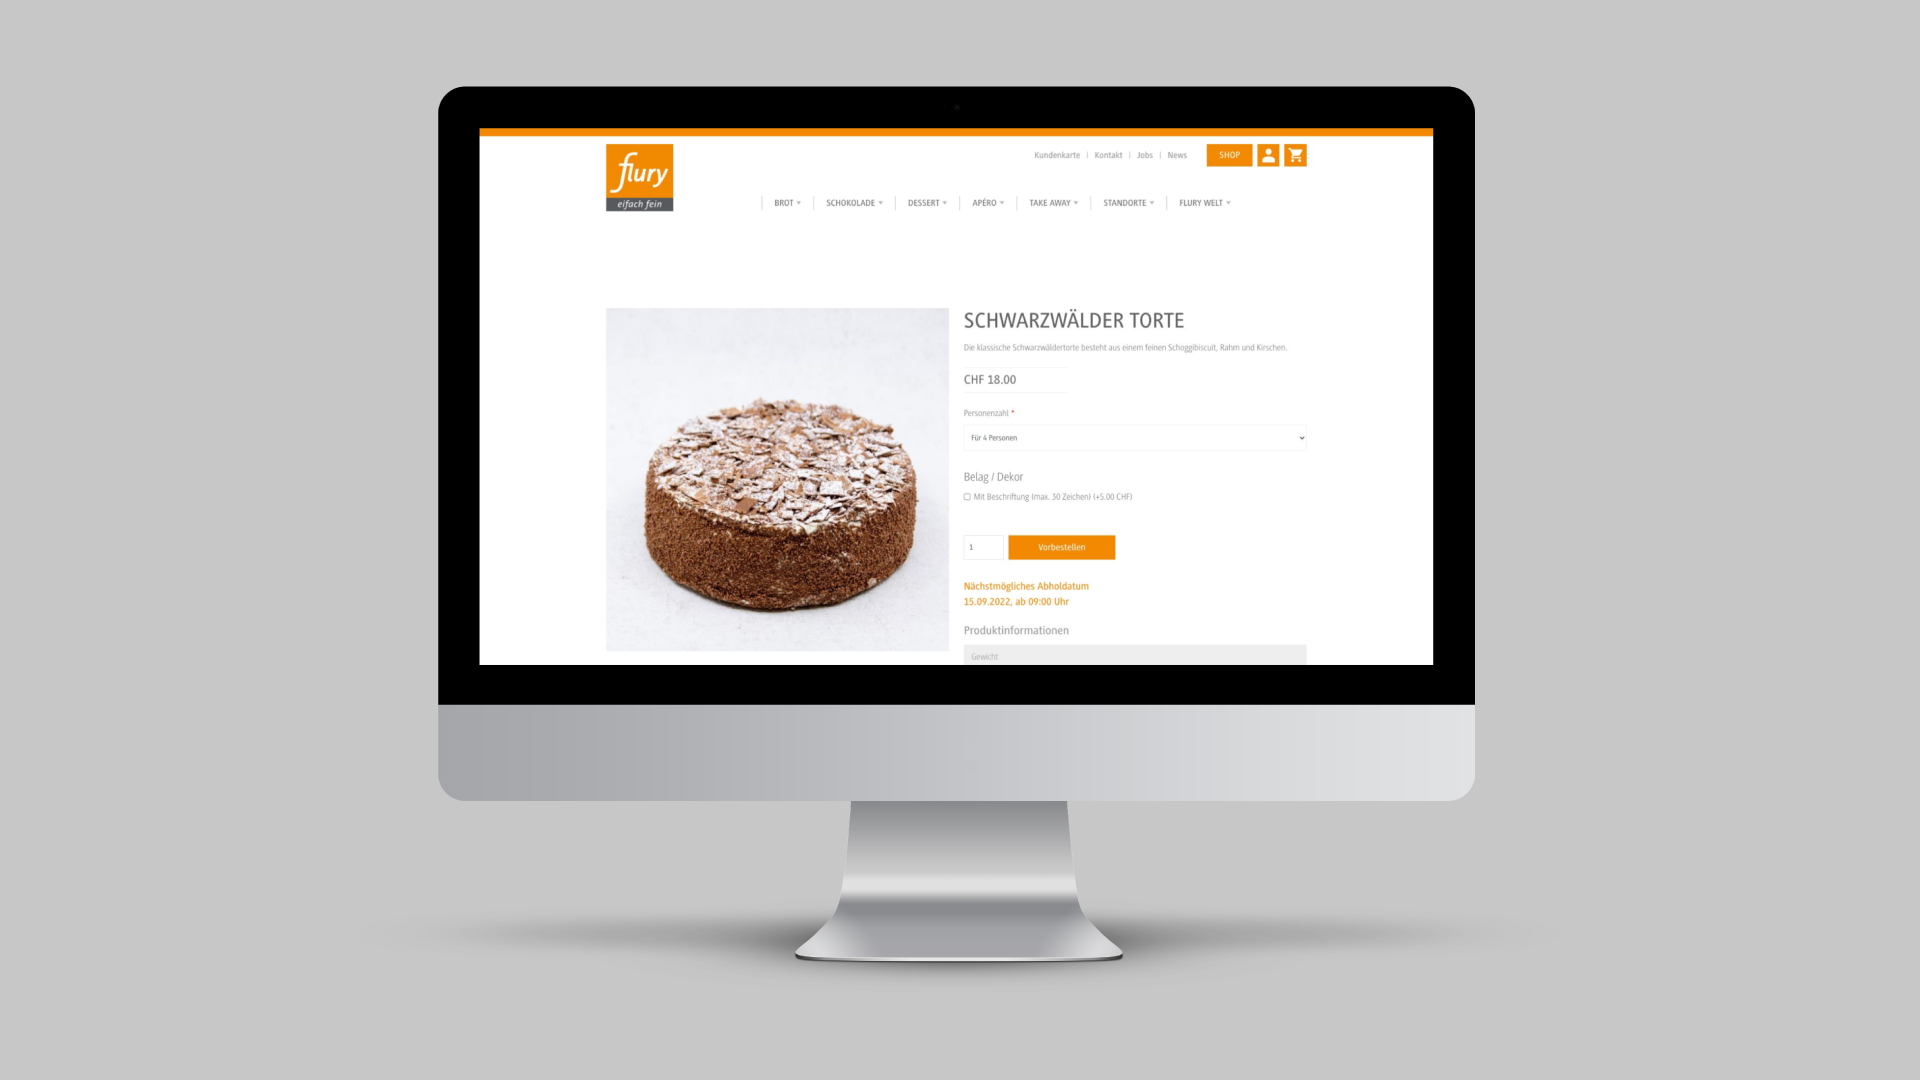 Produktdetailansicht im Onlineshop der Flury Bäckerei